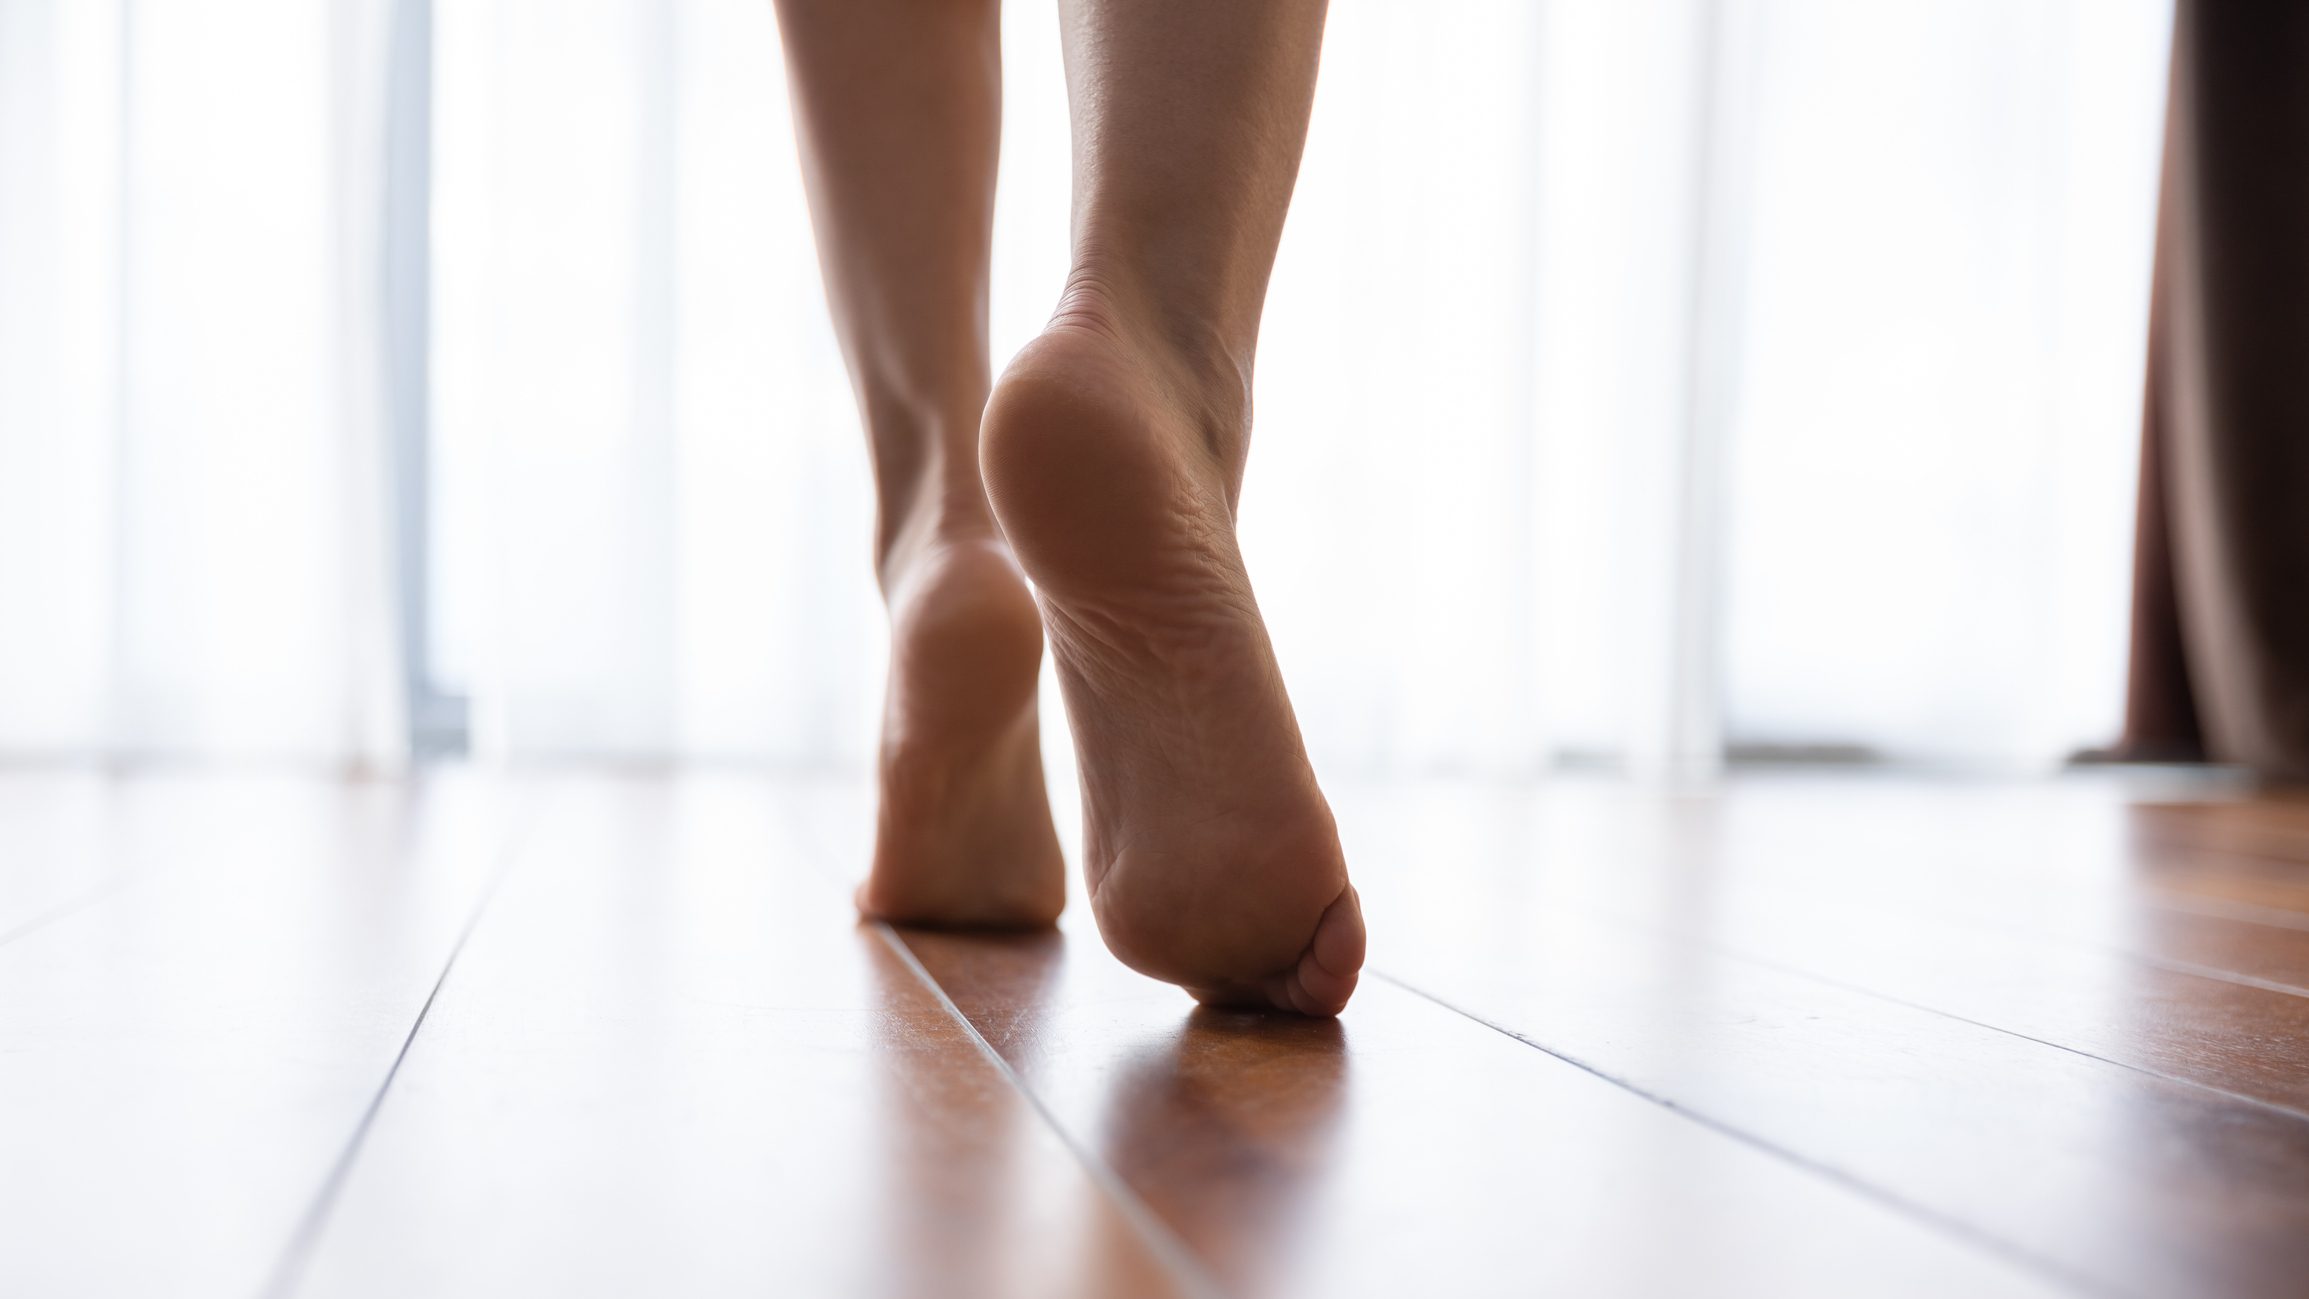 närbild av kvinnans fötter som går i hemmet's feet walking in home